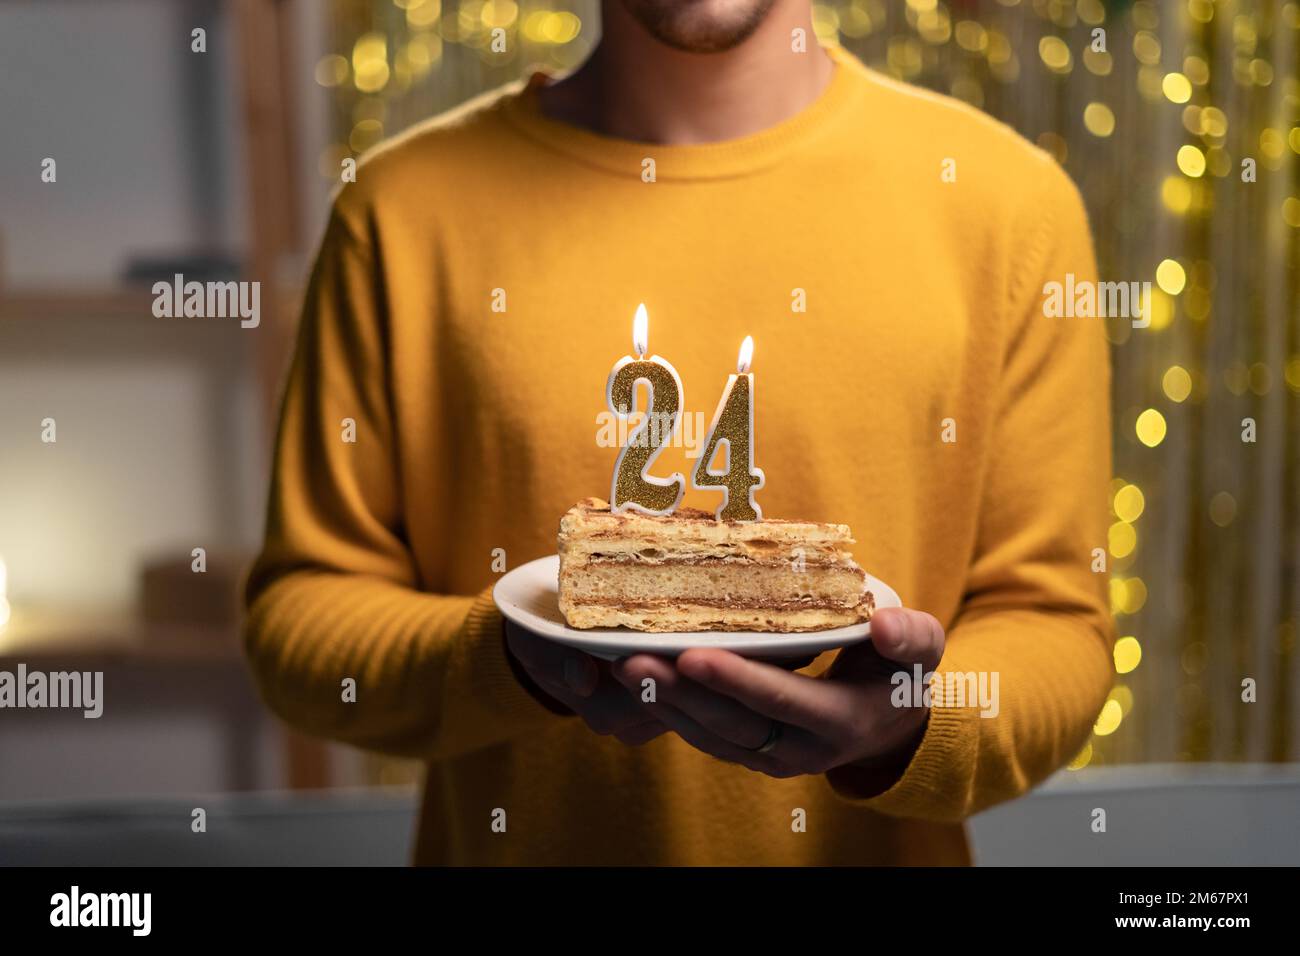 Kuchen mit der Nummer 24 brennenden Kerzen in Männerhänden. Zum 24. Geburtstag Stockfoto